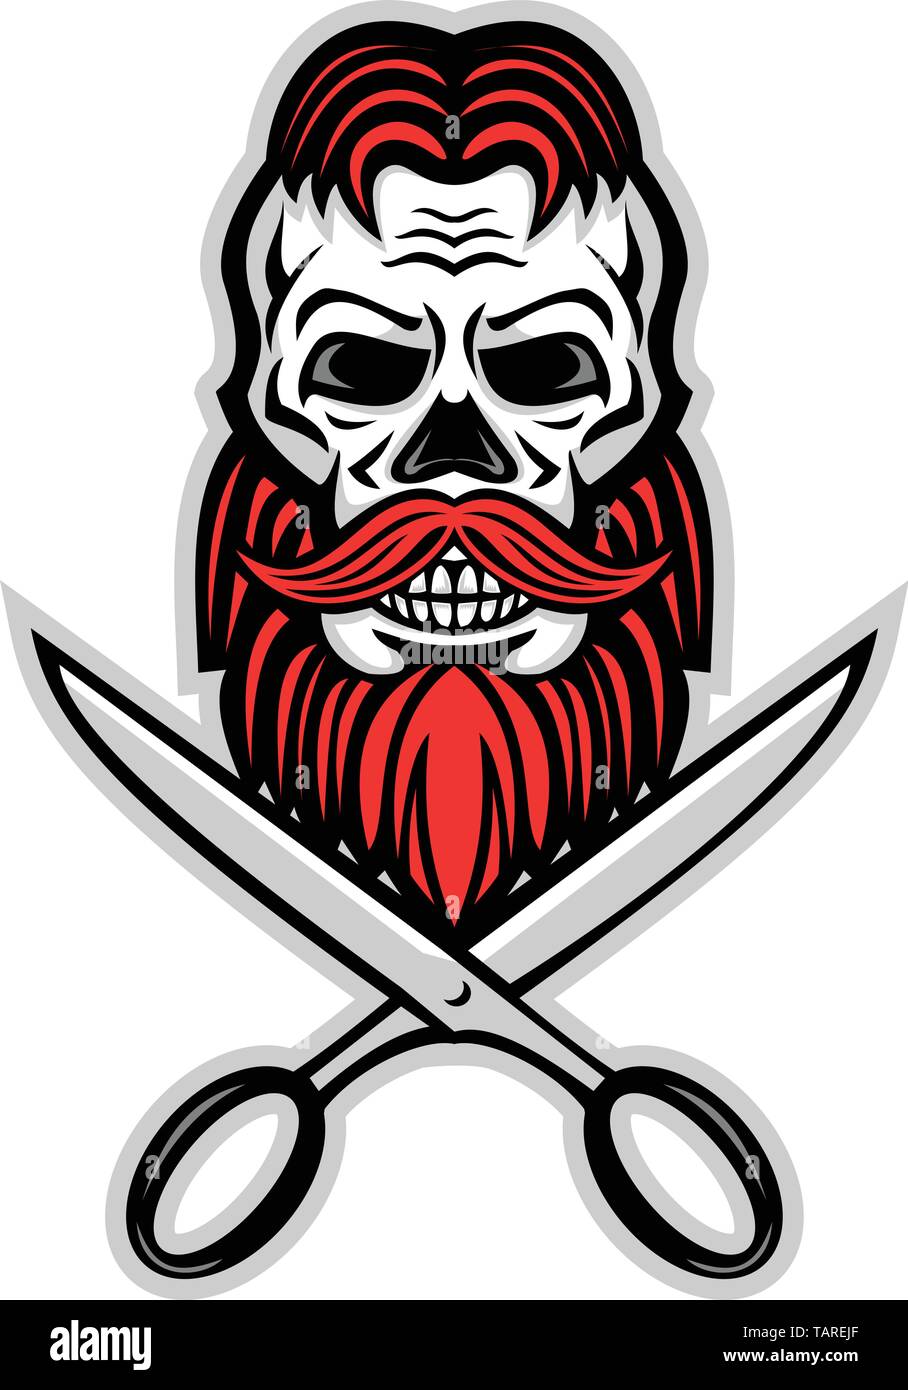 Icona di mascotte illustrazione del cranio di un maschio con i capelli rossi e la barba con un paio di forbici da barbiere viwed dalla parte anteriore su sfondo isolato rétro styl Illustrazione Vettoriale